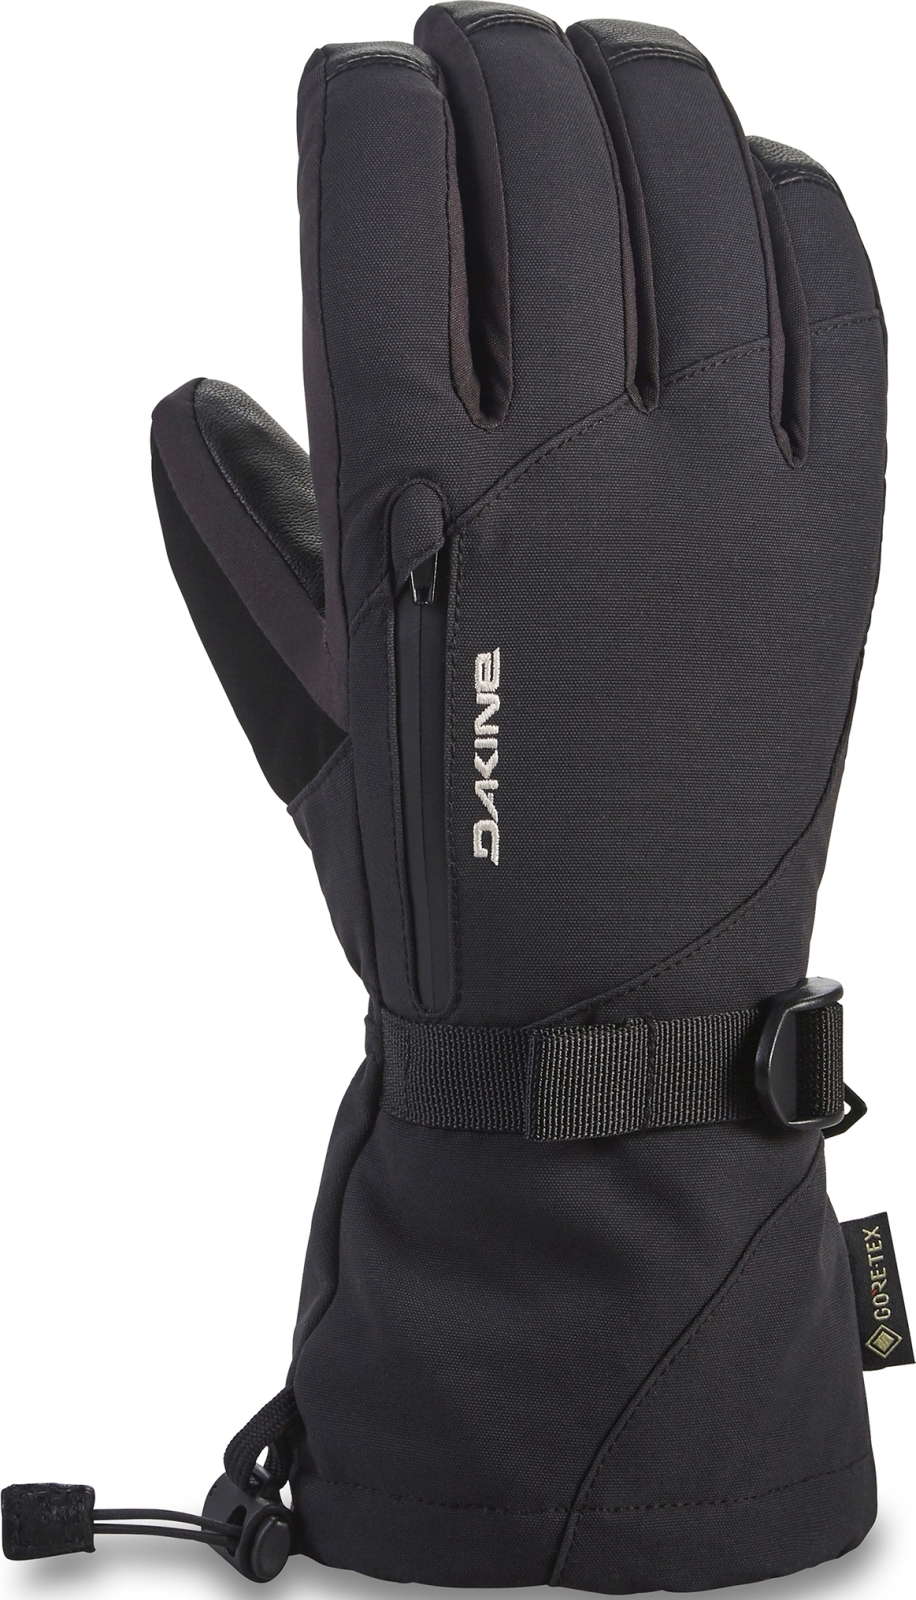 E-shop Dakine Leather Sequoia Gore-Tex Glove - black 6.0